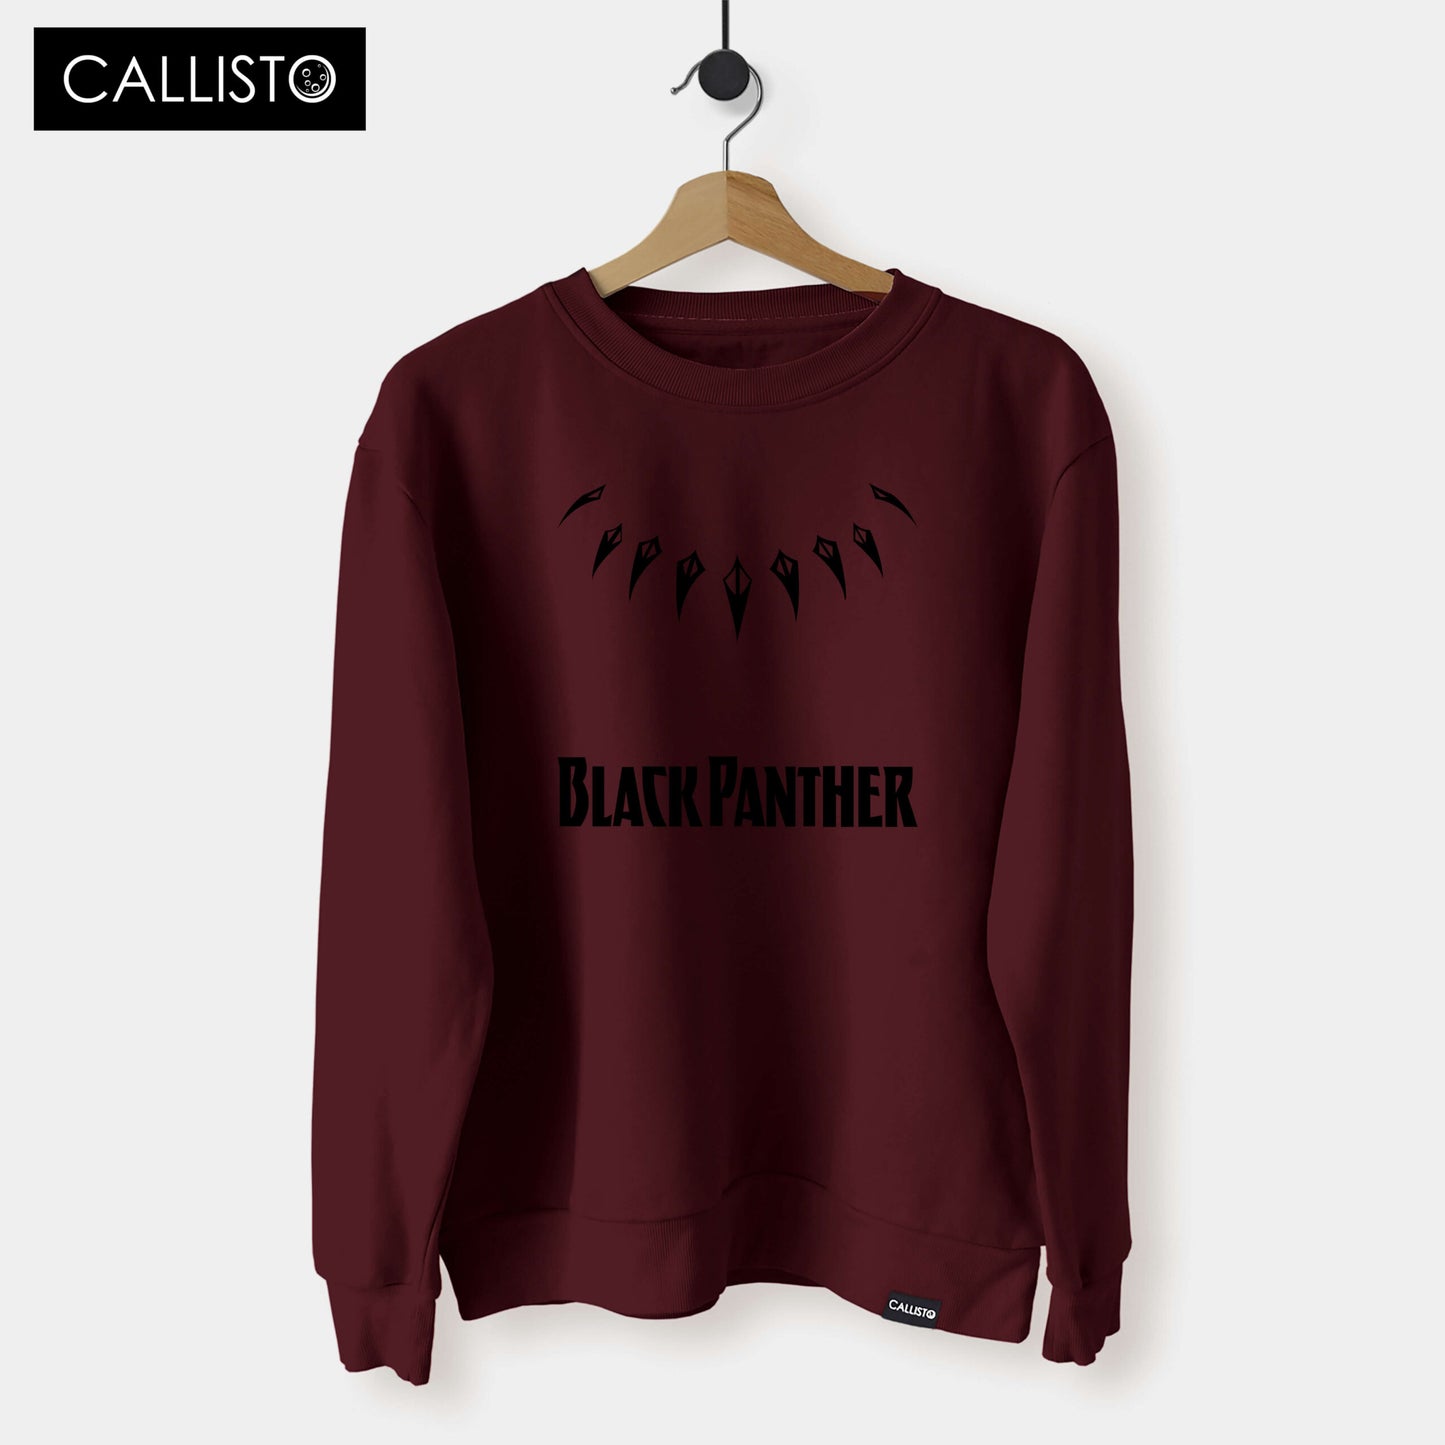 Black Panther - Sweat Shirt